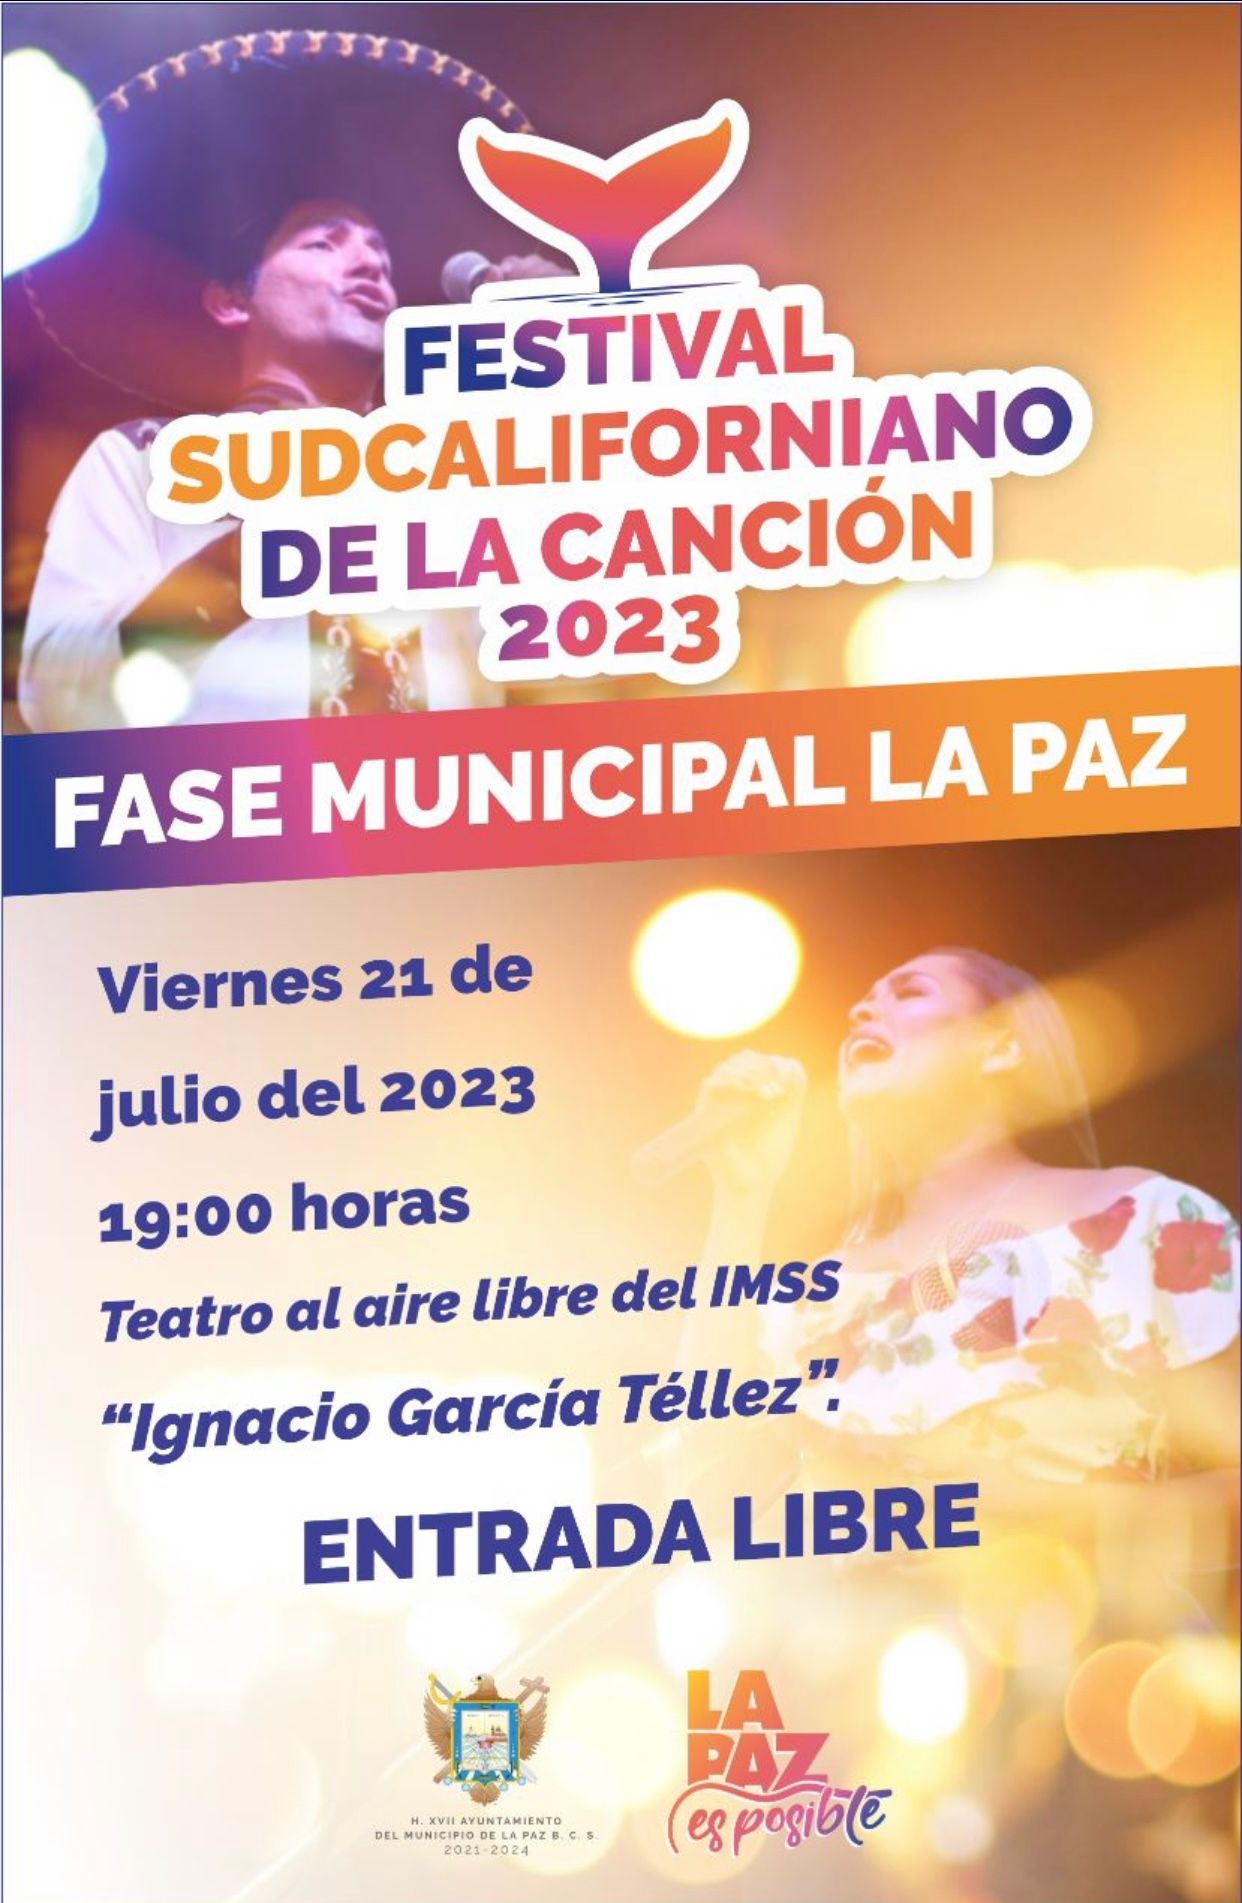 Realizarán Festival Sudcaliforniano de la Canción 2023 en La Paz